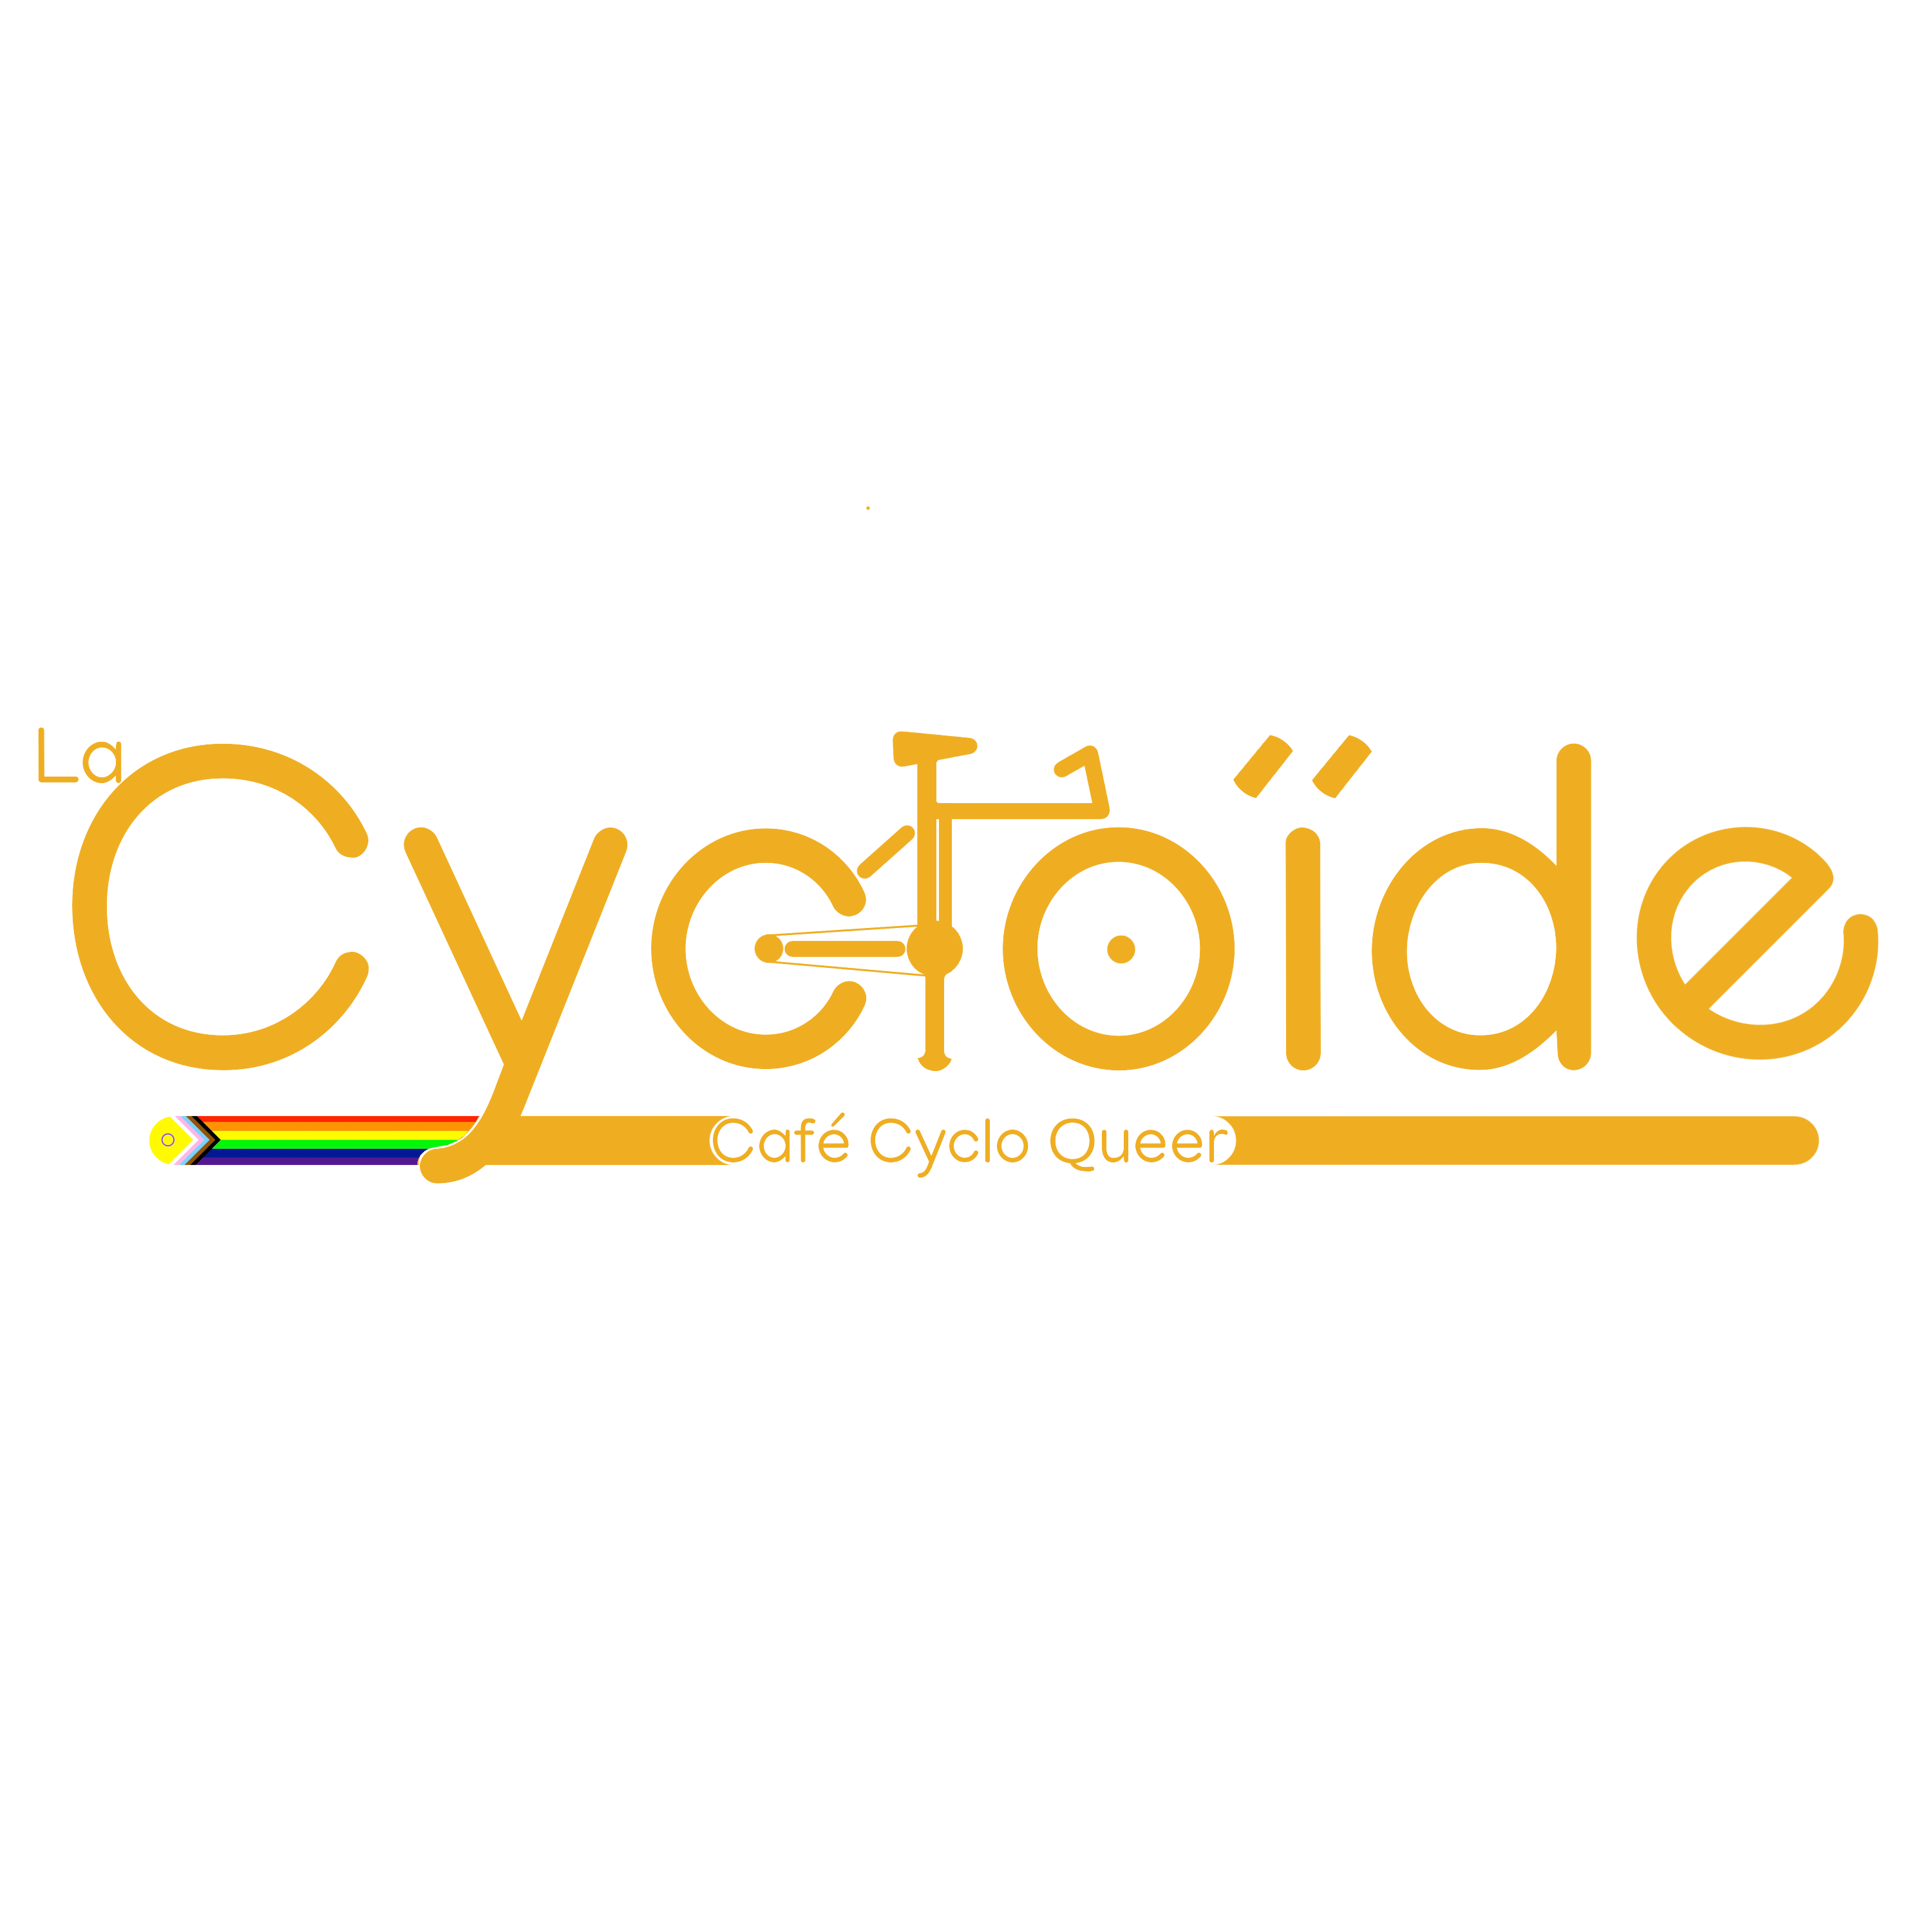 La Cycloïde - Café Cyclo Queer (Cycloïde)